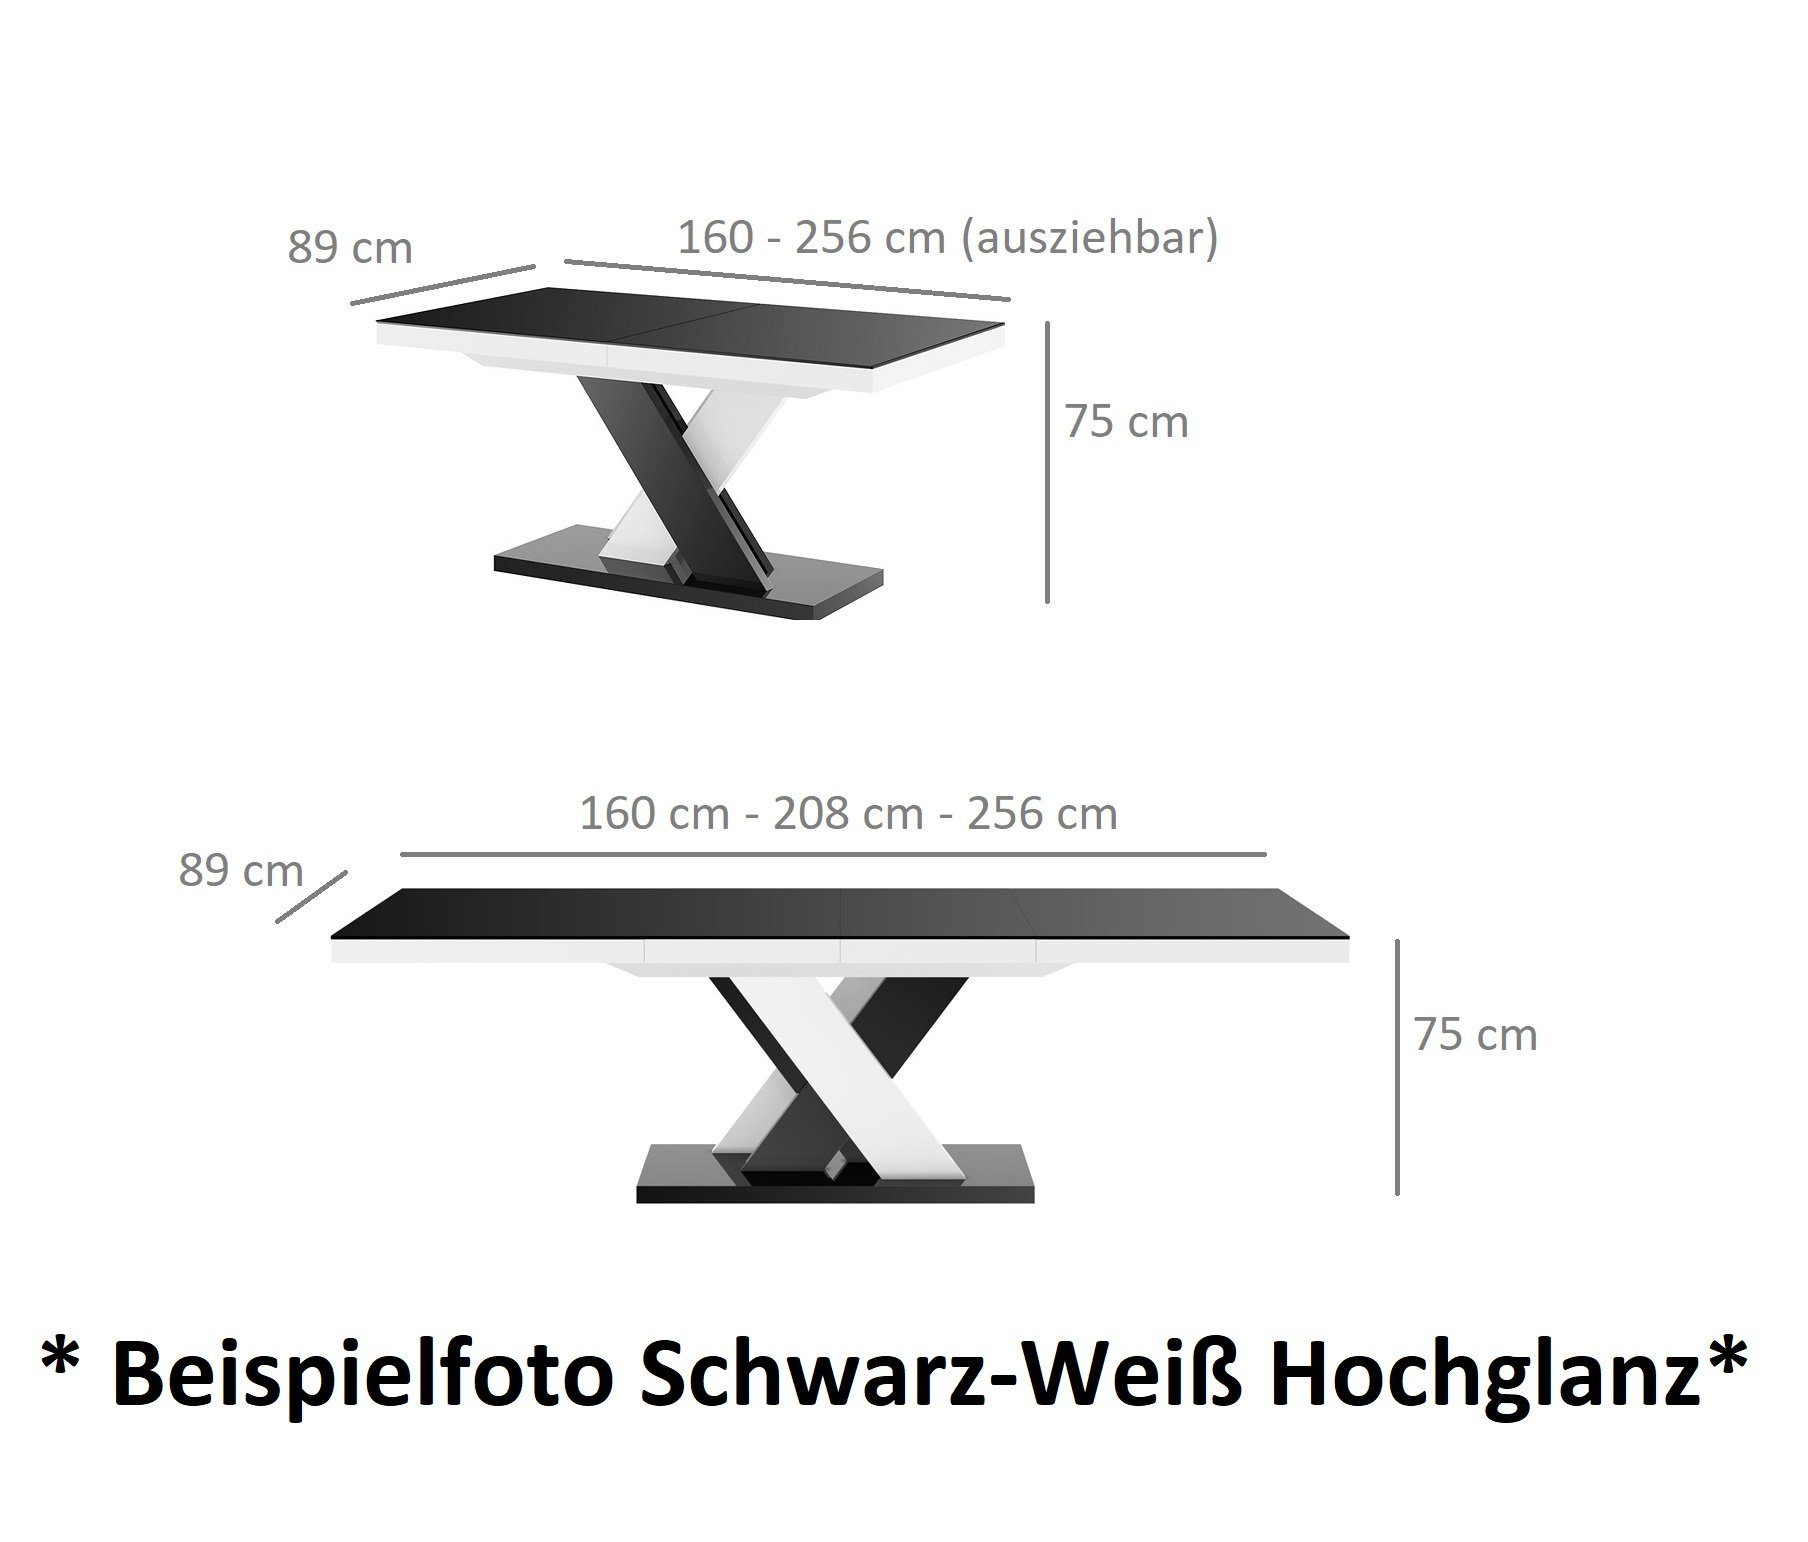 cm Design Hochglanz - ausziehbar Weiß Rostoptik - matt designimpex HEN-111 Esstisch 256 160